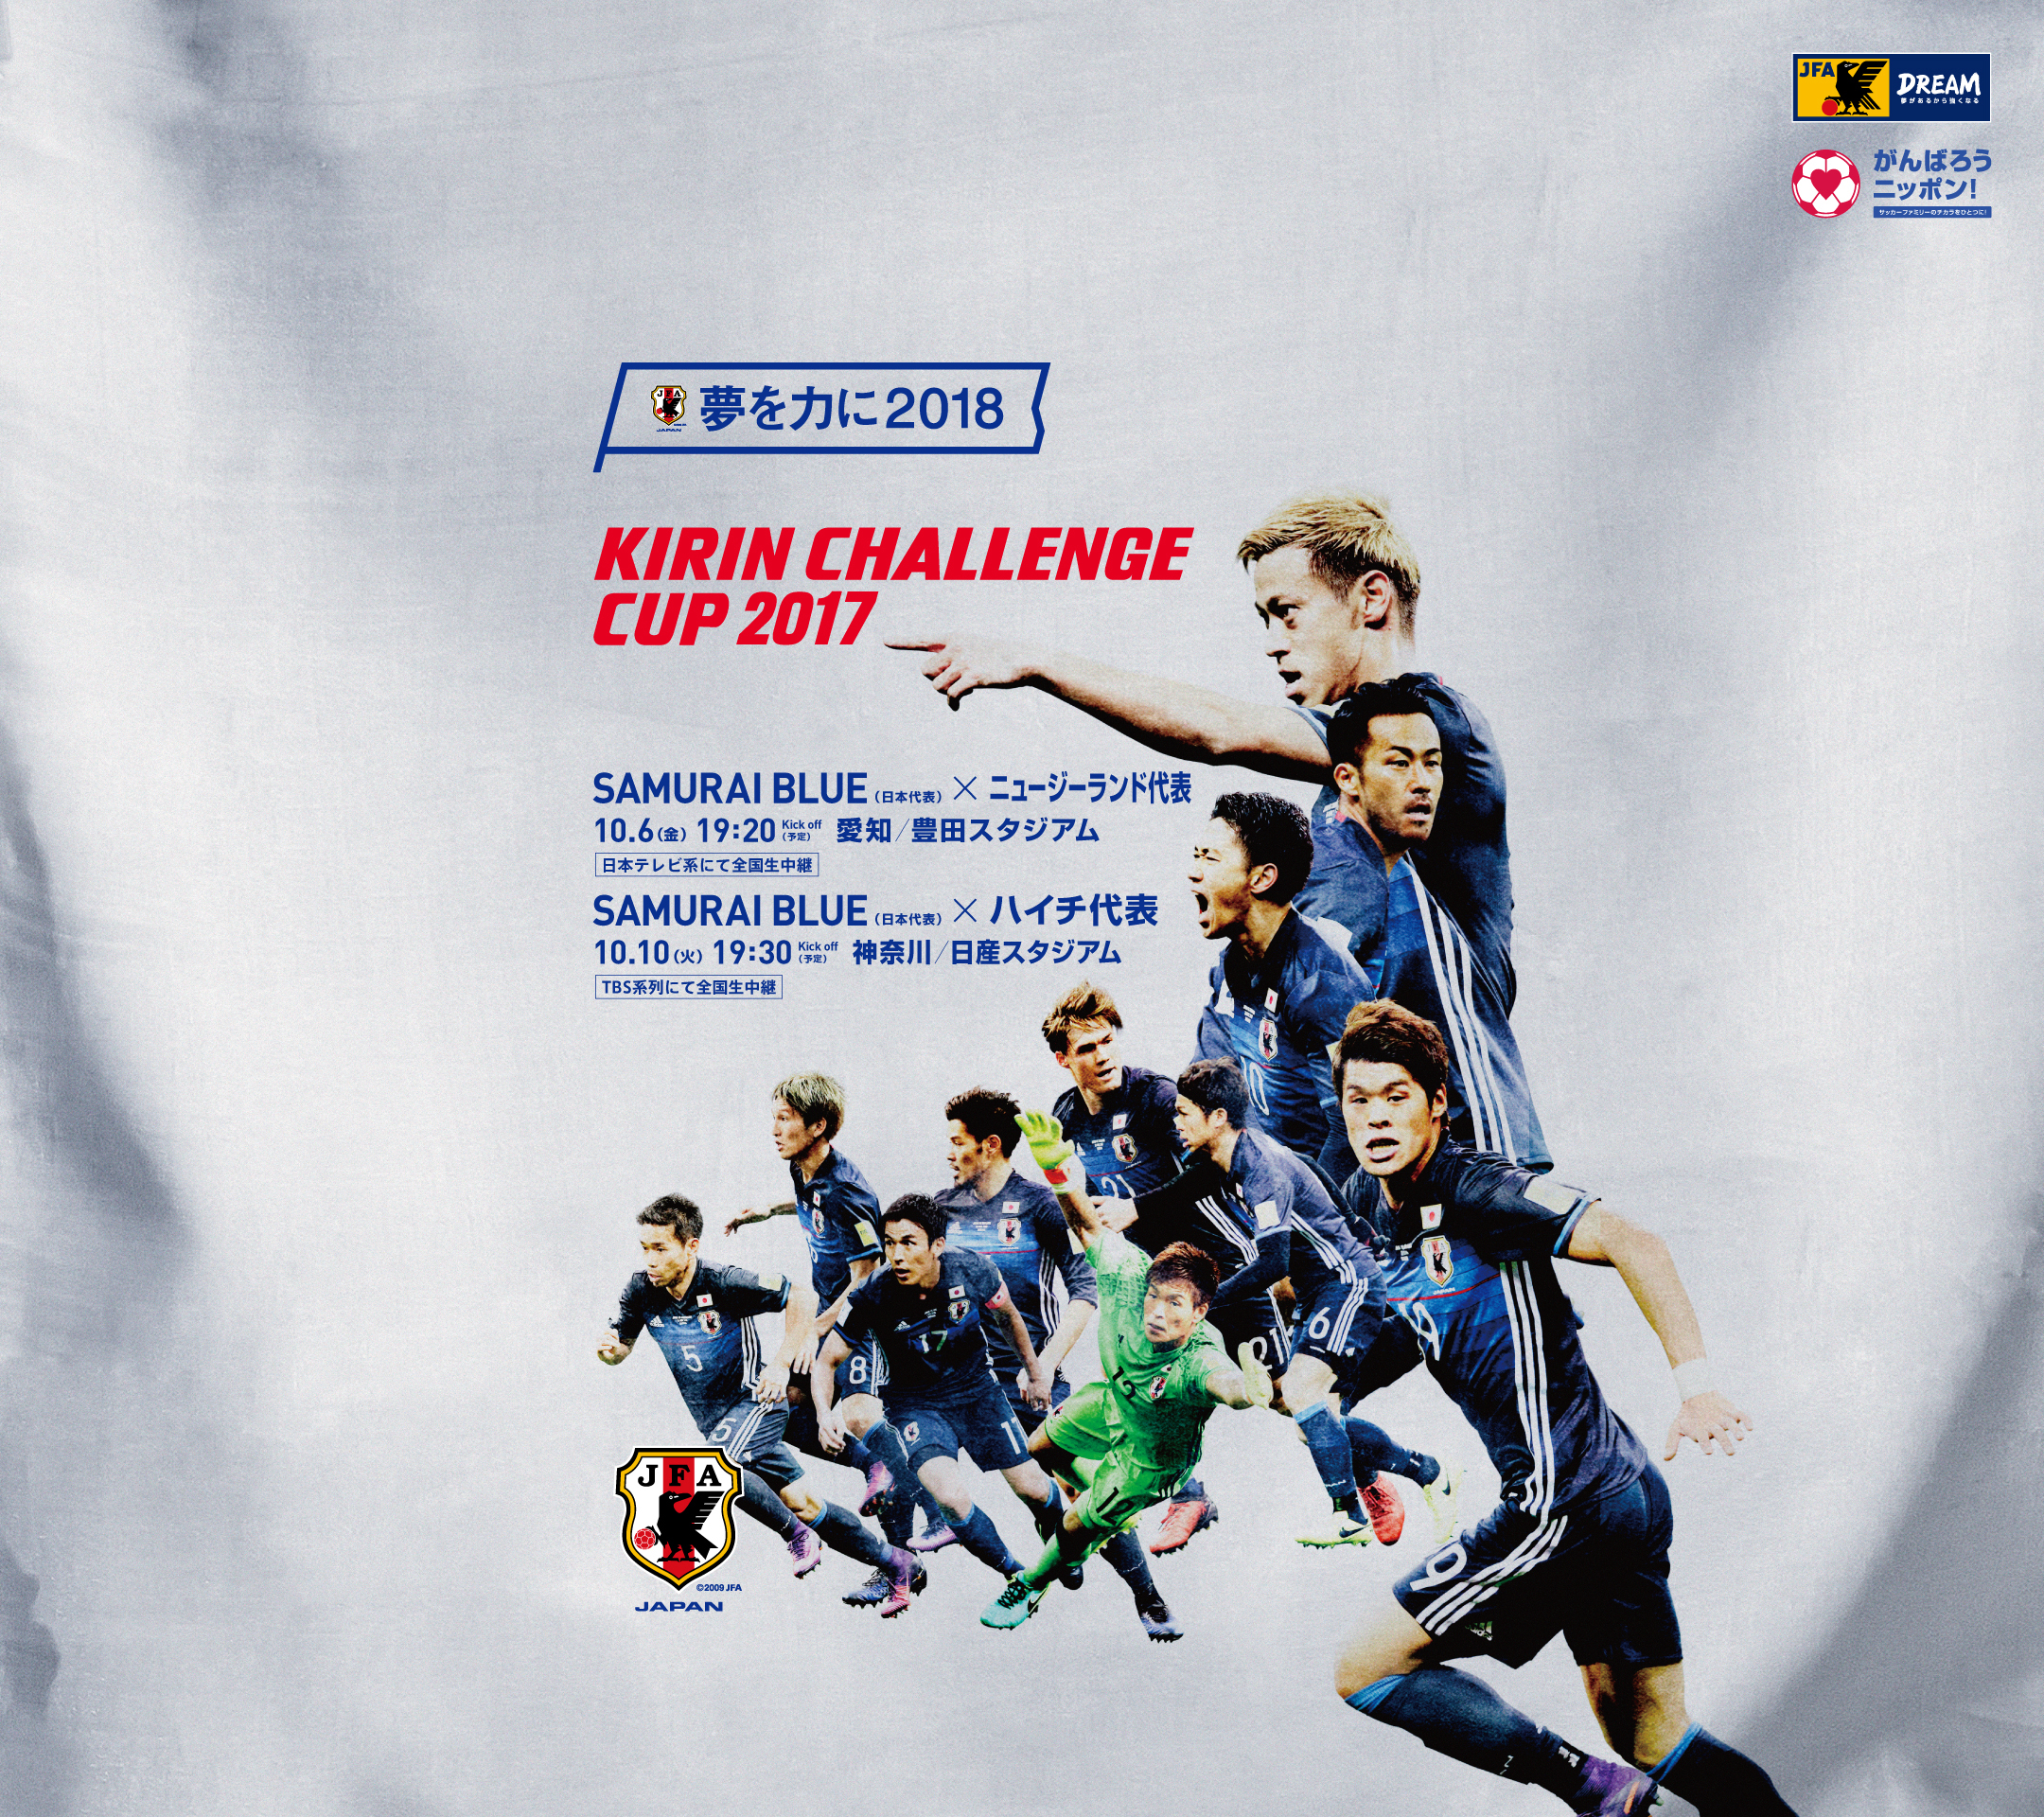 壁紙 ポスターダウンロード キリンチャレンジカップ17 10 6 Samurai Blue 日本代表 Jfa 日本サッカー協会